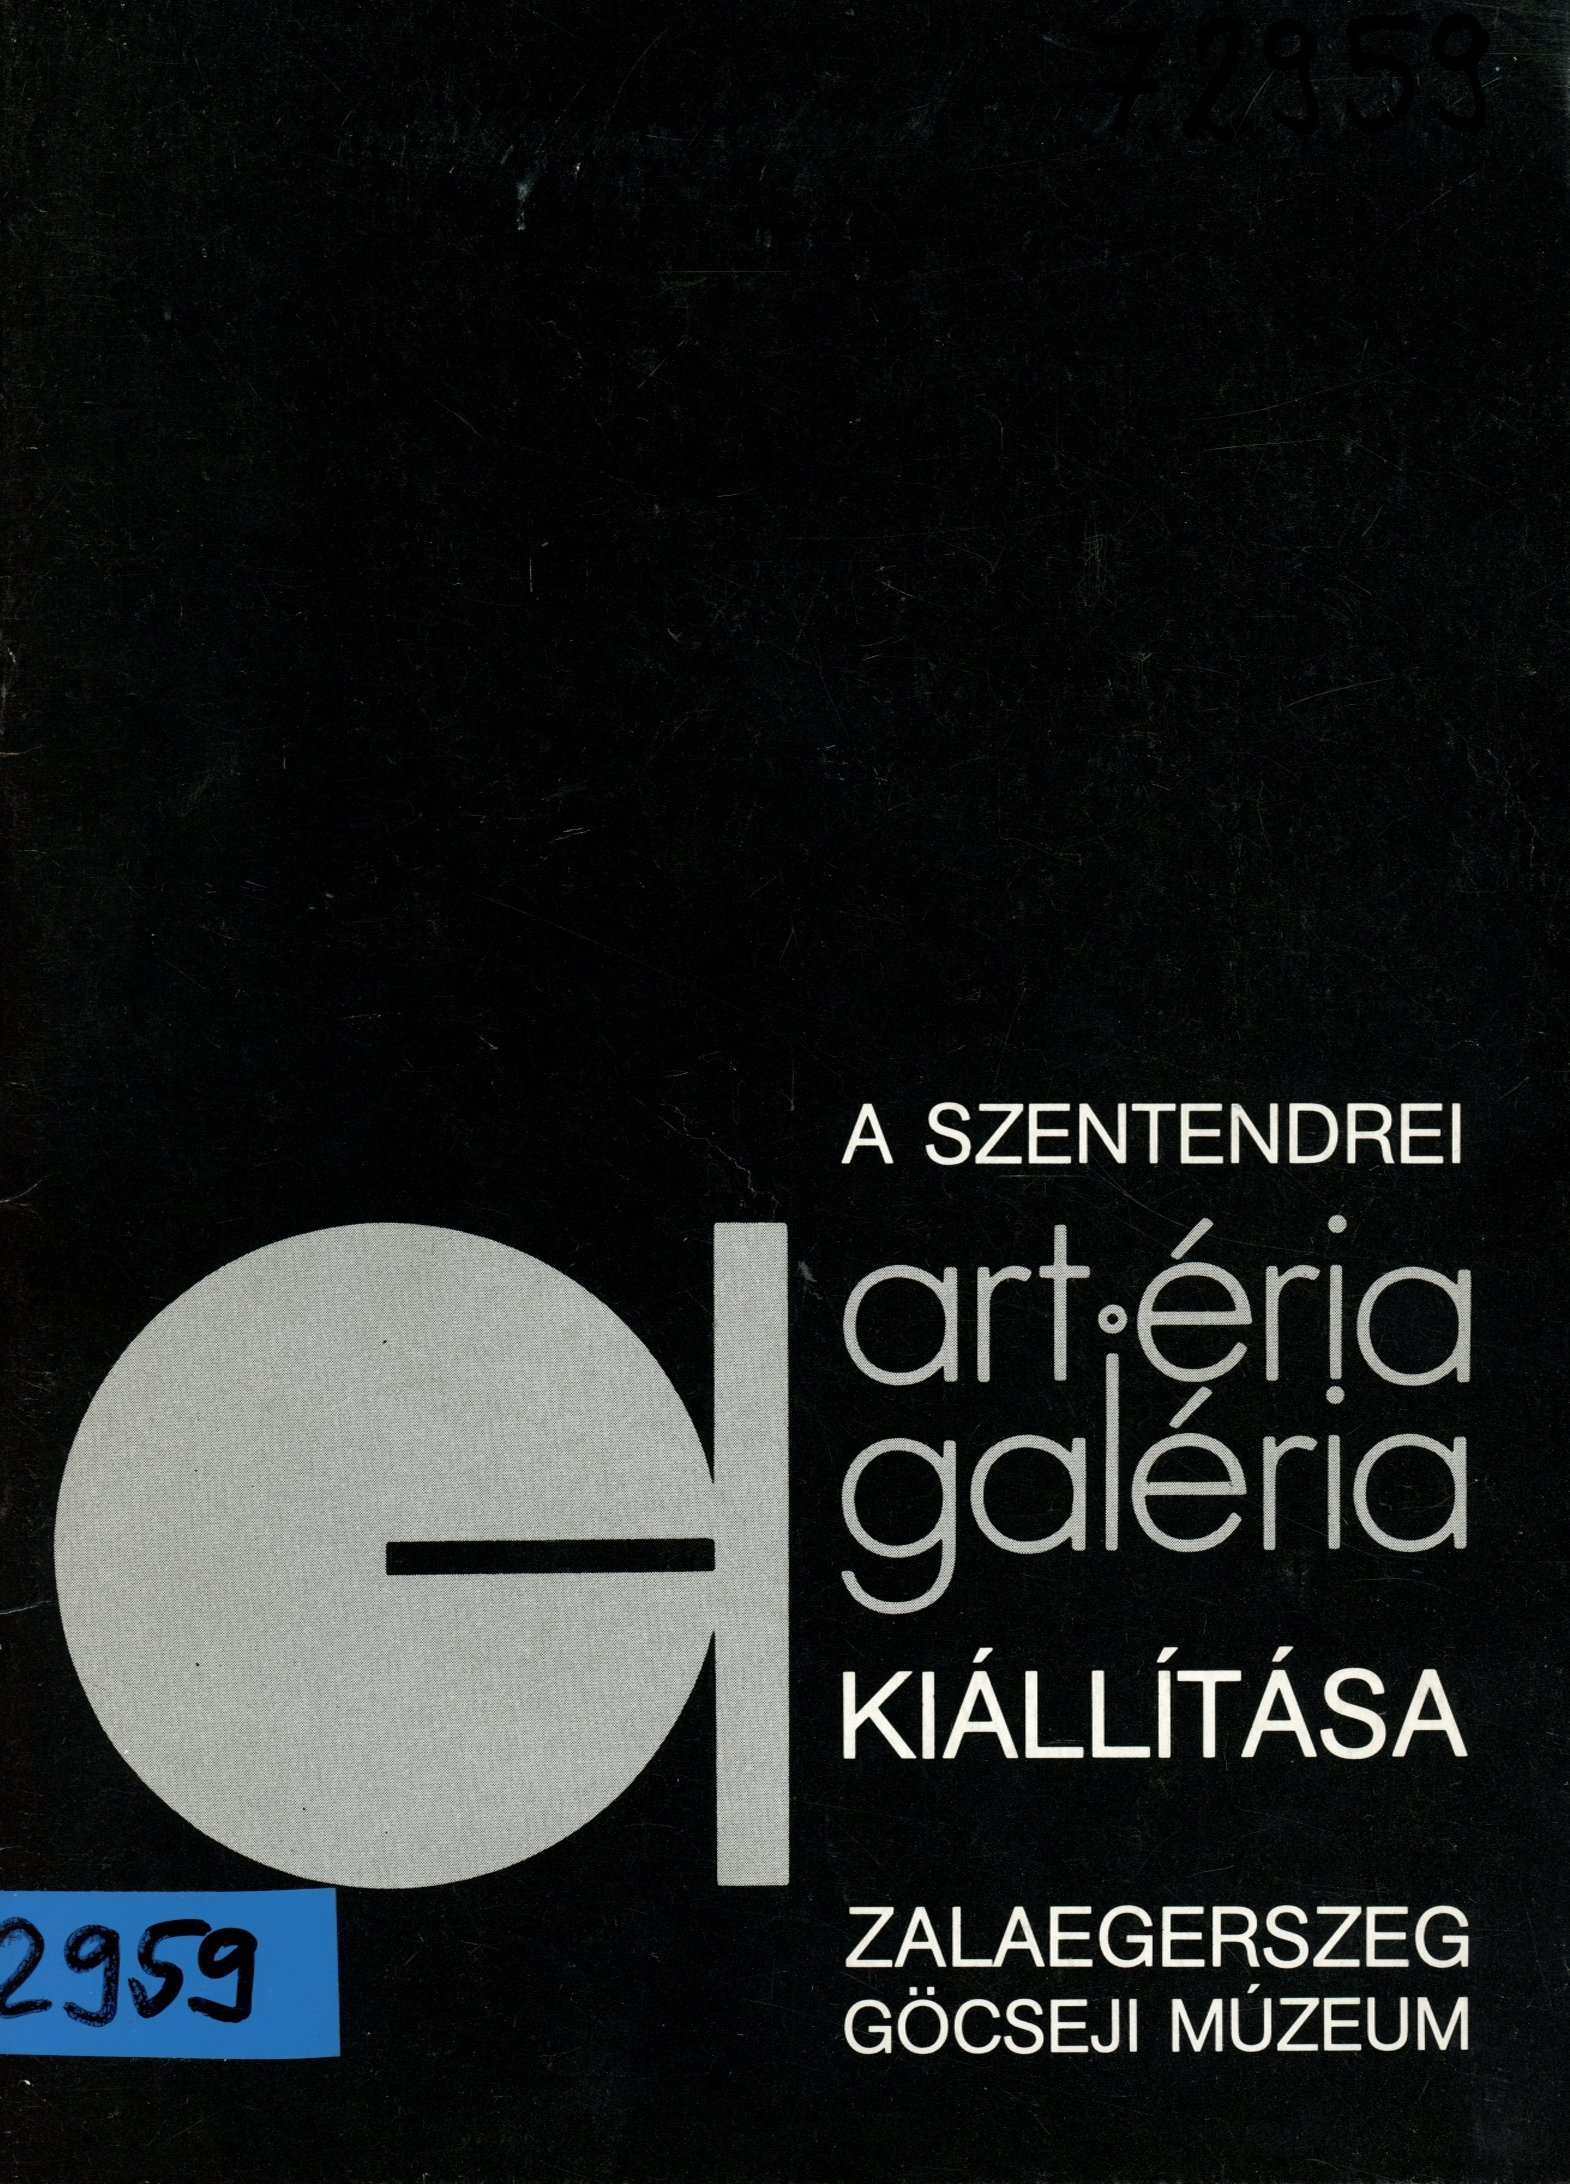 A szentendrei art éria galéria kiállítása (Erkel Ferenc Múzeum és Könyvtár, Gyula CC BY-NC-SA)